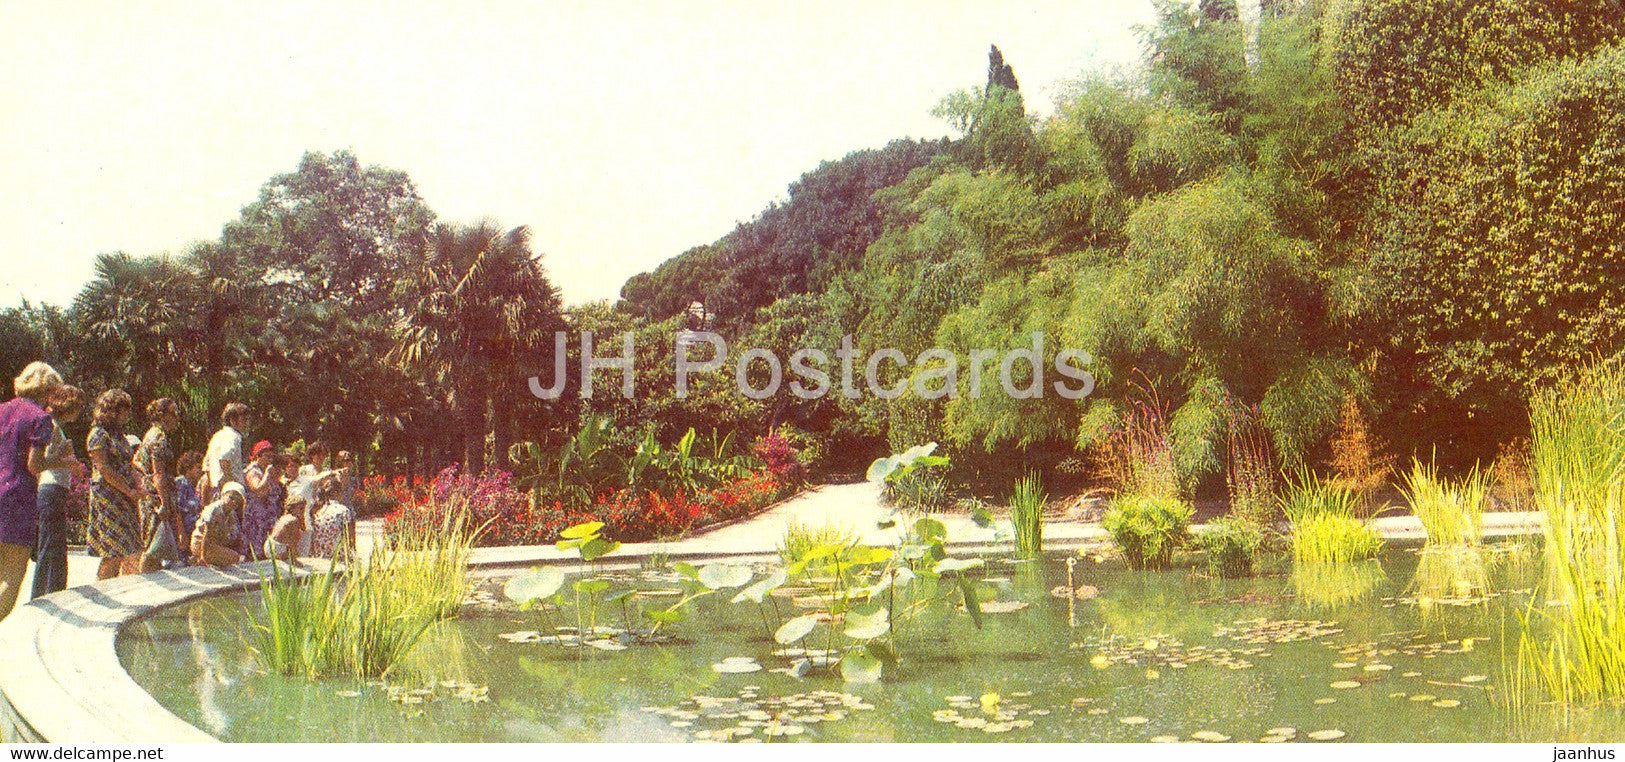 Yalta - pond in Nikitsky Botanical Garden - Crimea - 1982 - Ukraine USSR - unused - JH Postcards